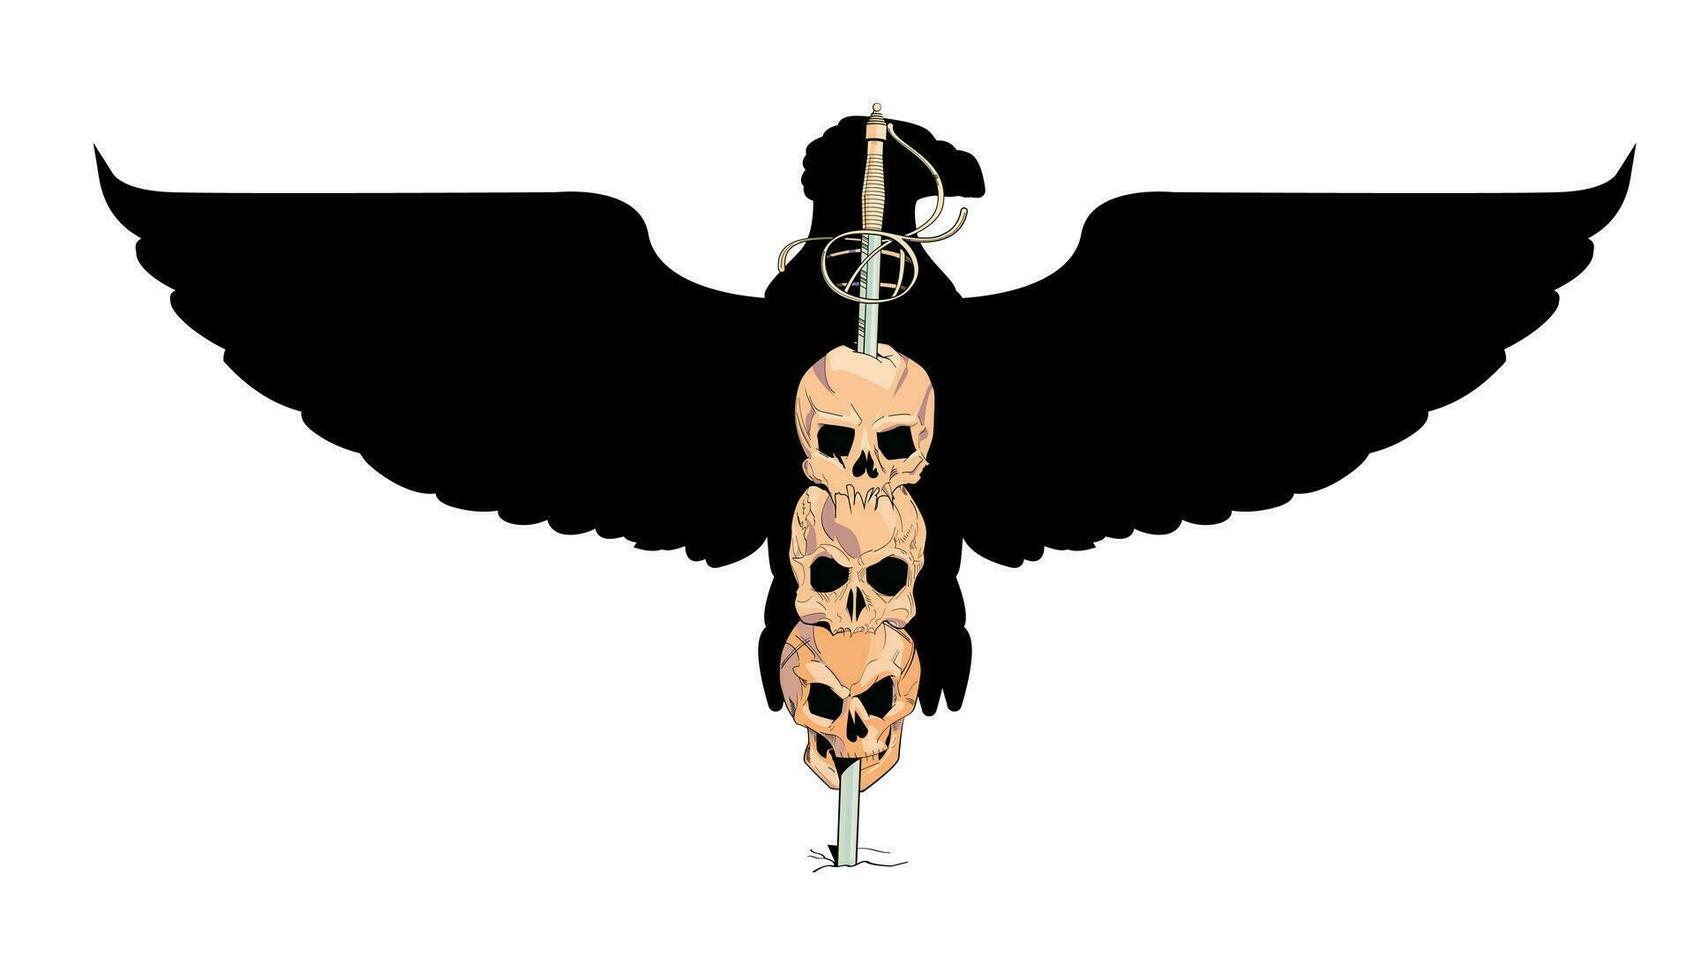 t-shirt ontwerp met drie schedels spies door een zwaard met een zwart adelaar in de achtergrond. illustratie over de verschrikkingen van oorlog. vector